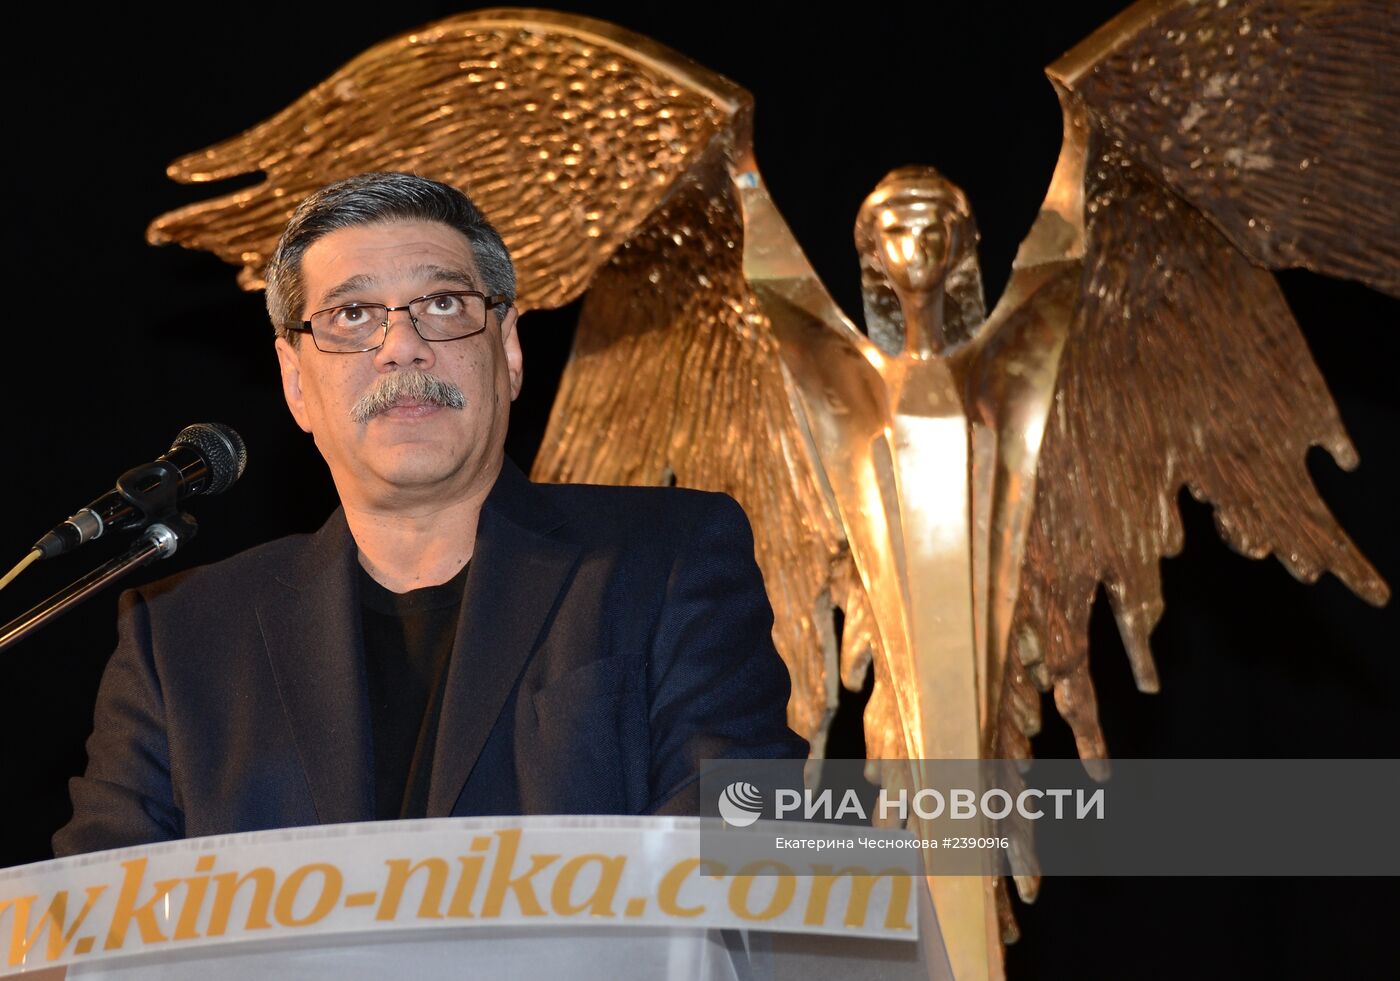 Объявление номинантов Национальной премии "НИКА" за 2013 год